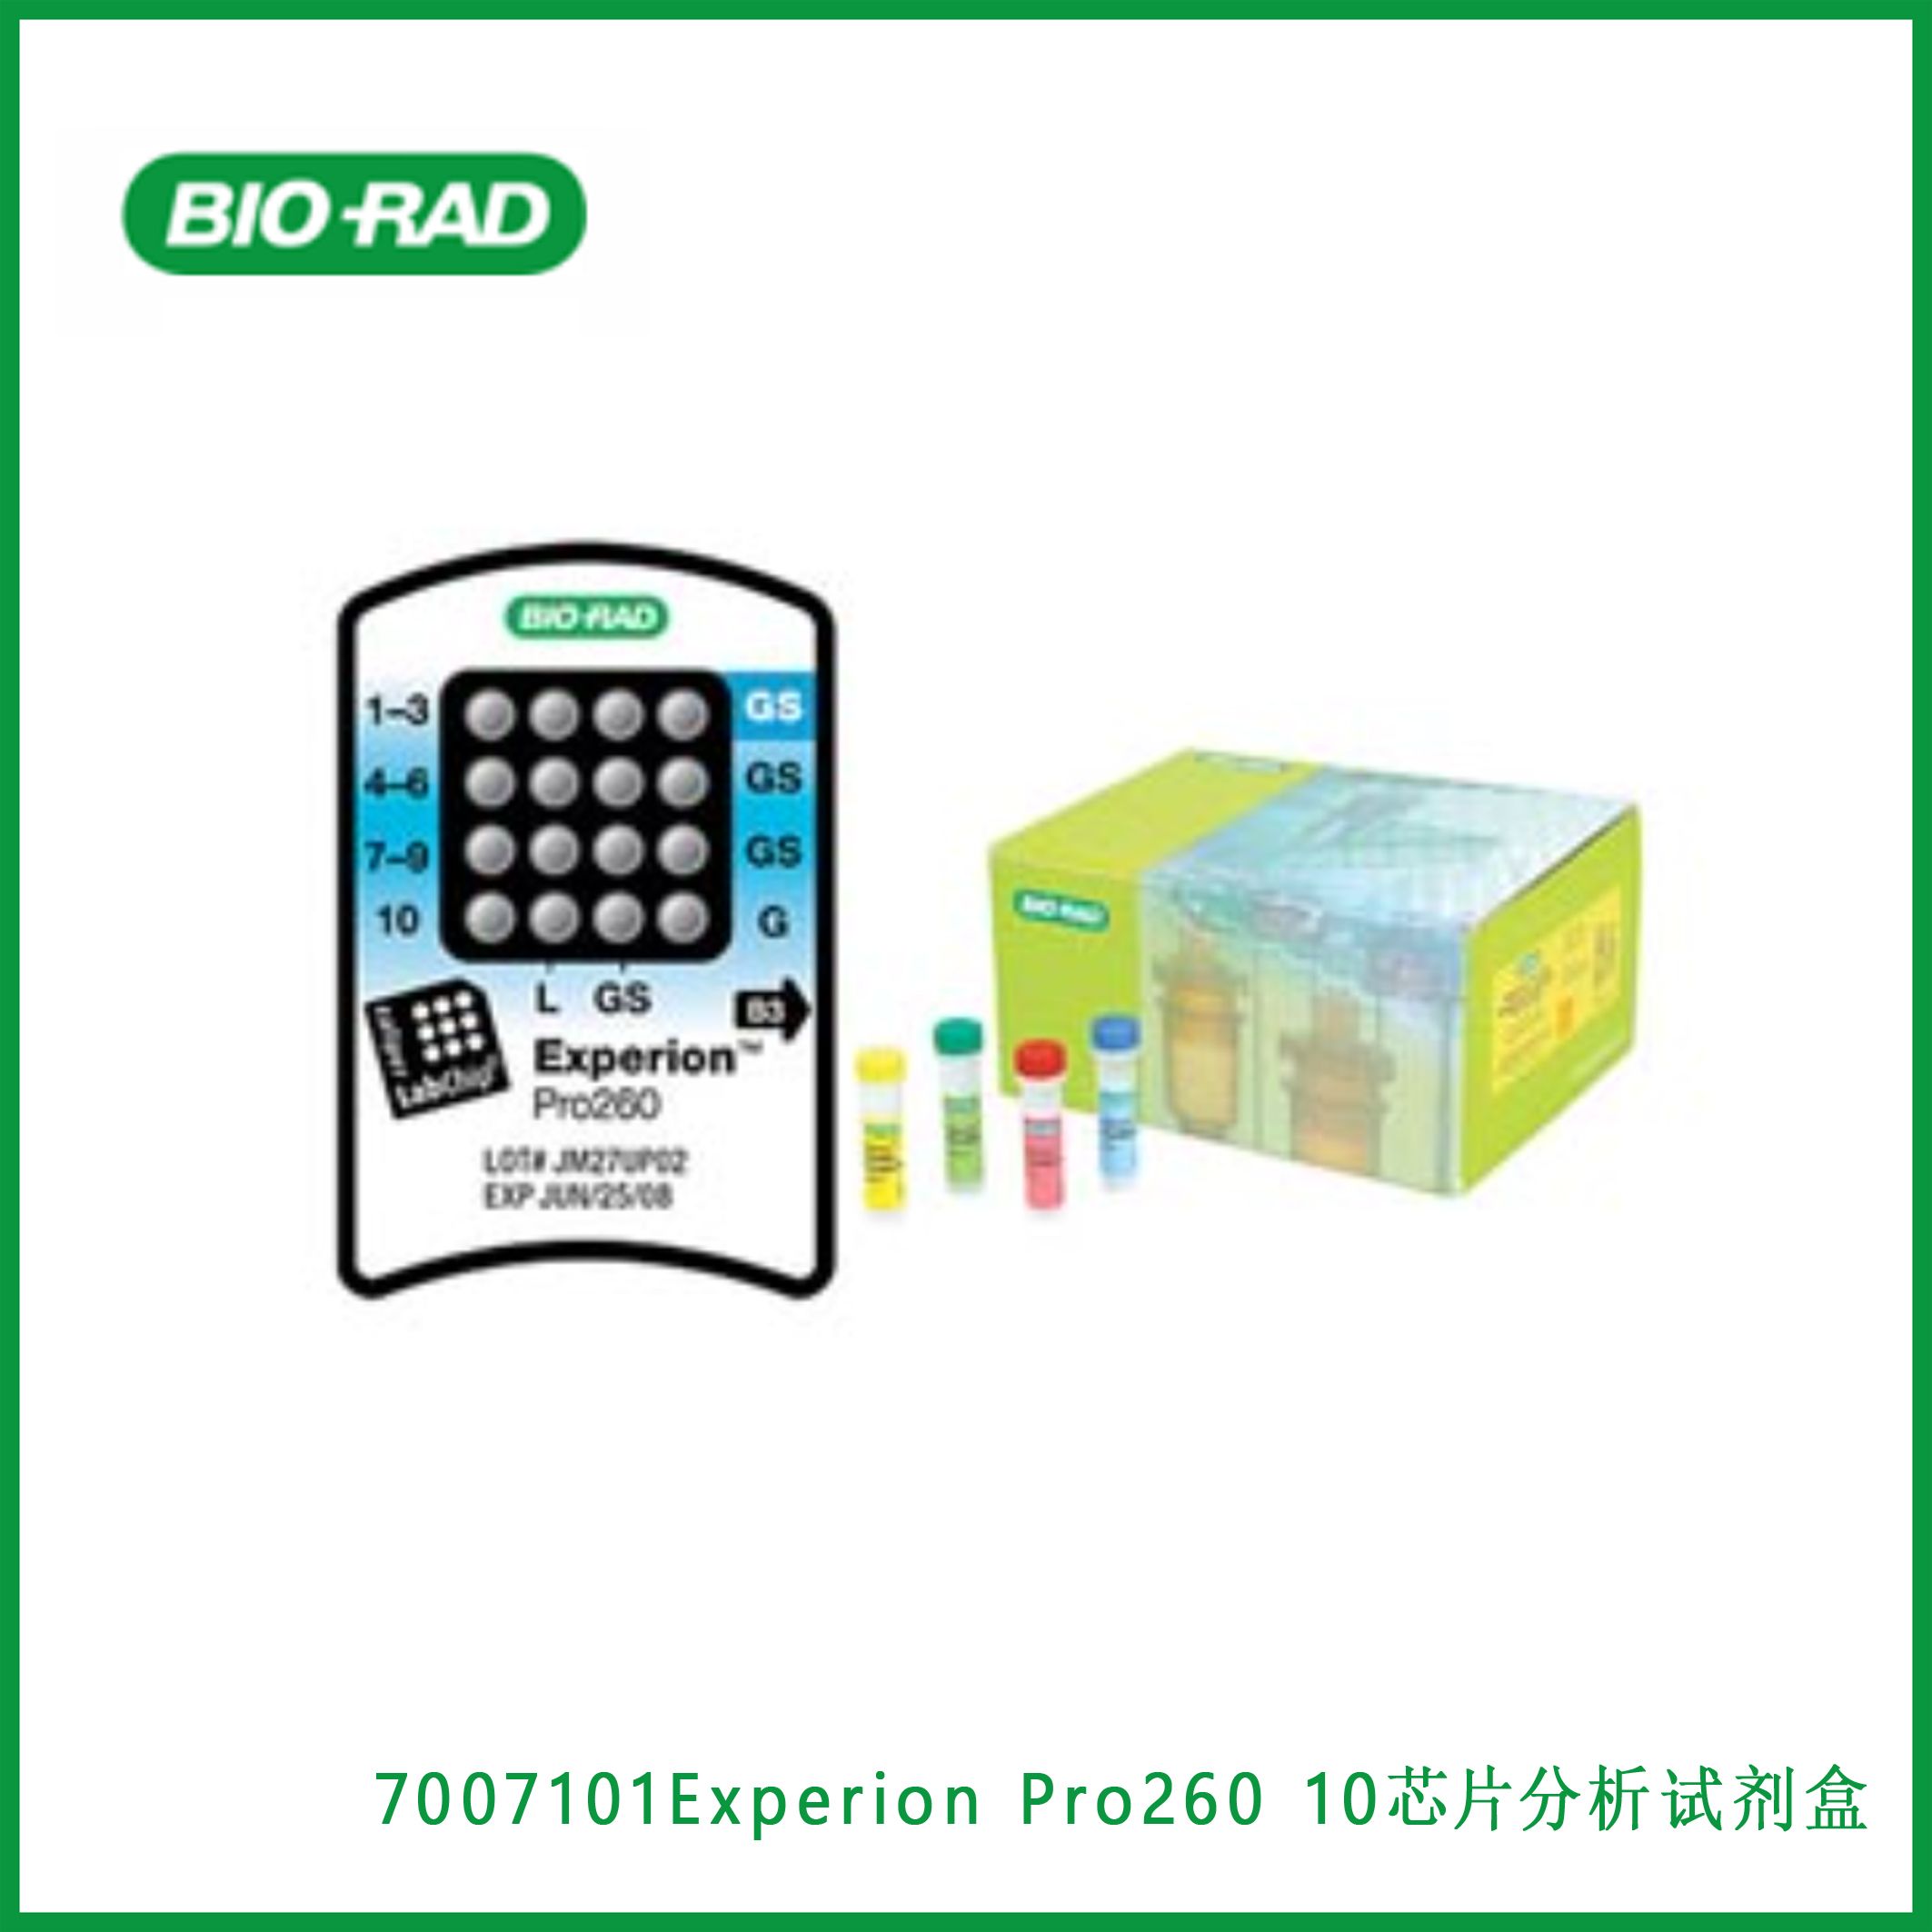 伯乐Bio-Rad7007101Experion Pro260 Analysis Kit for 10 Chips， Experion Pro260 10芯片分析试剂盒,现货